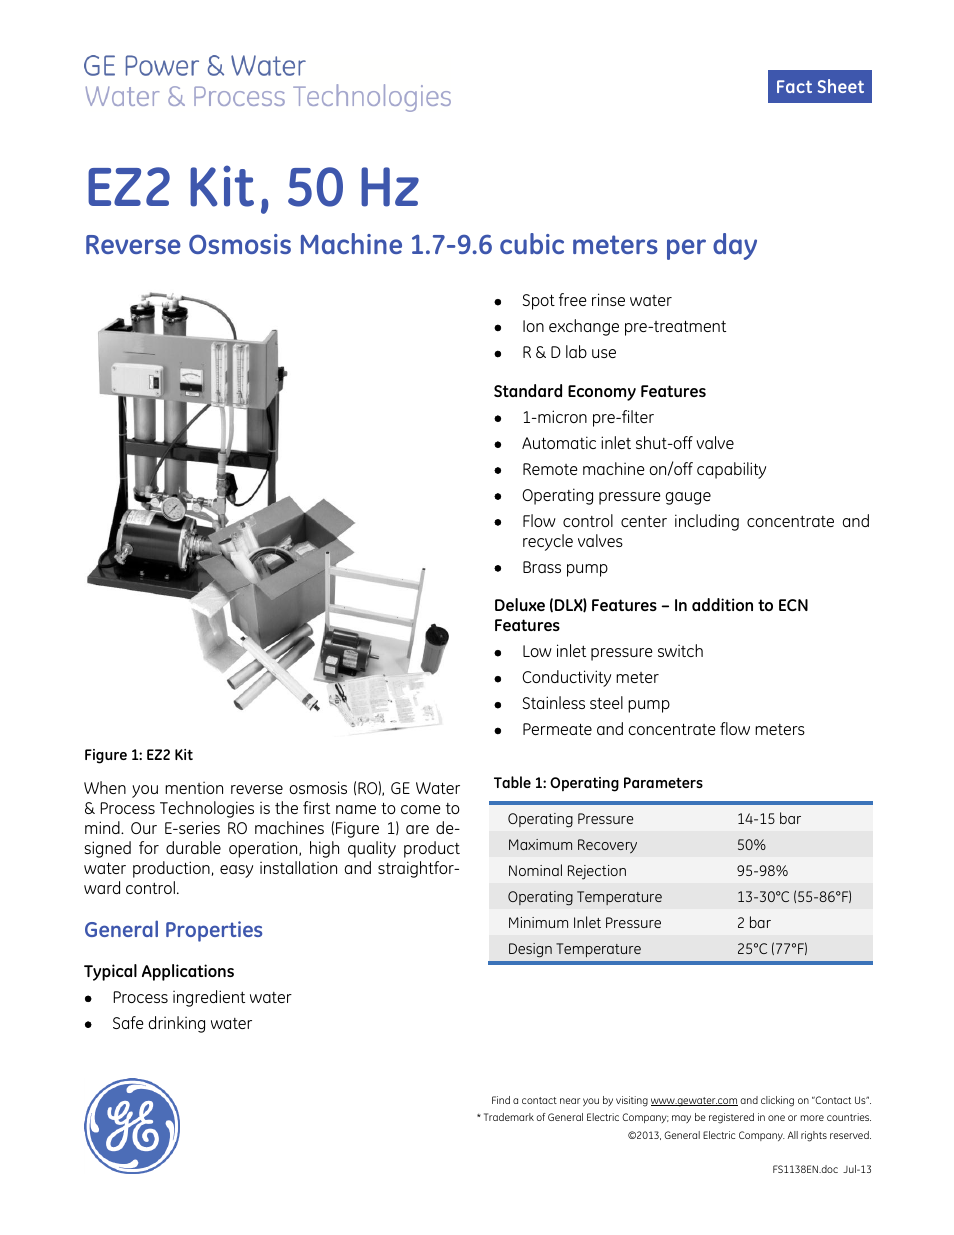 E-Series Reverse Osmosis - EZ-2 Kit 50 Hz